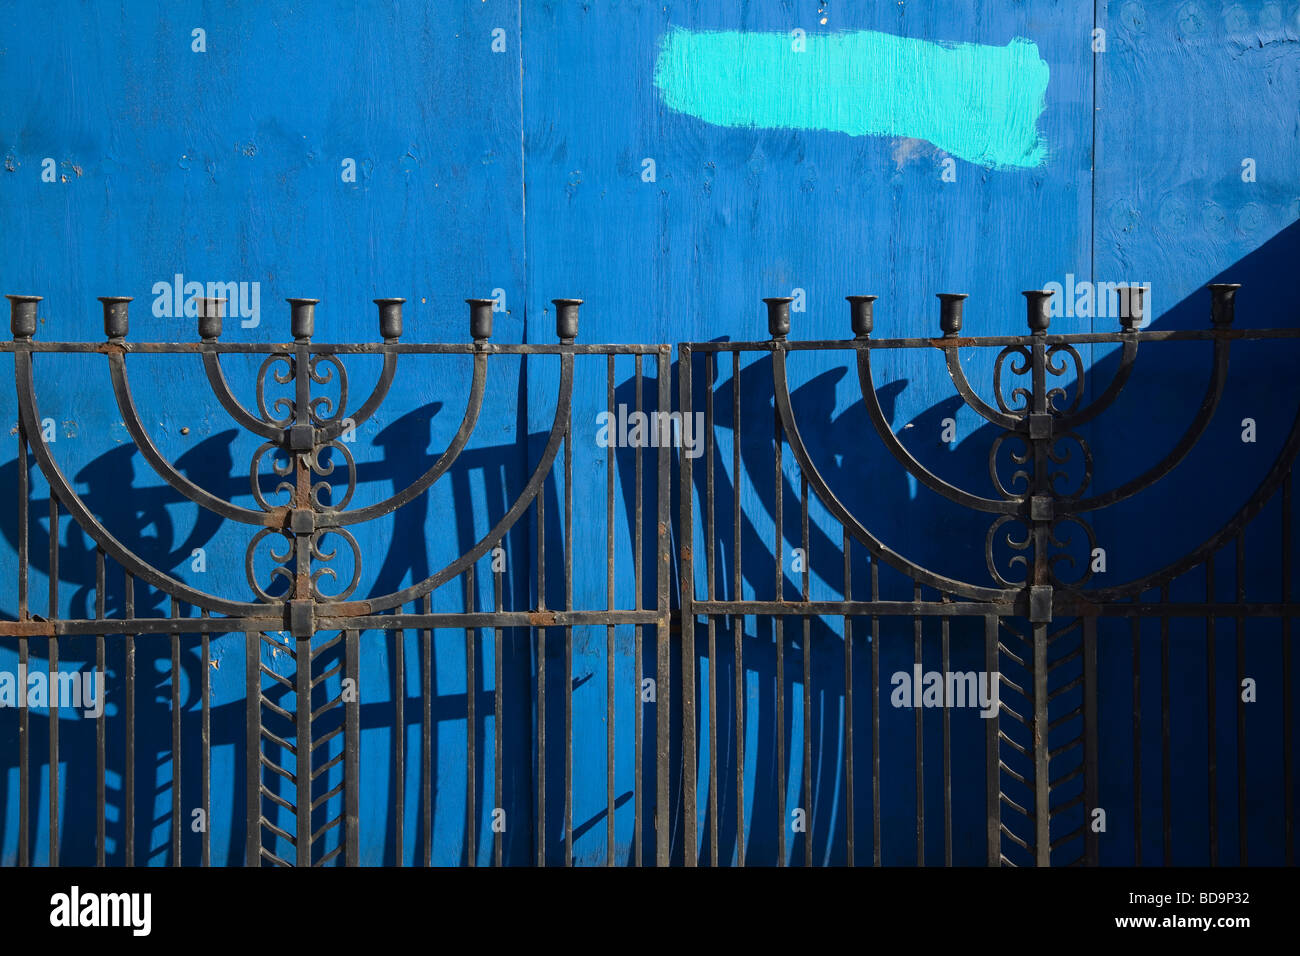 Portes de fer avec le peuple juif menorah avec cartes bleu foncé en arrière-plan Banque D'Images